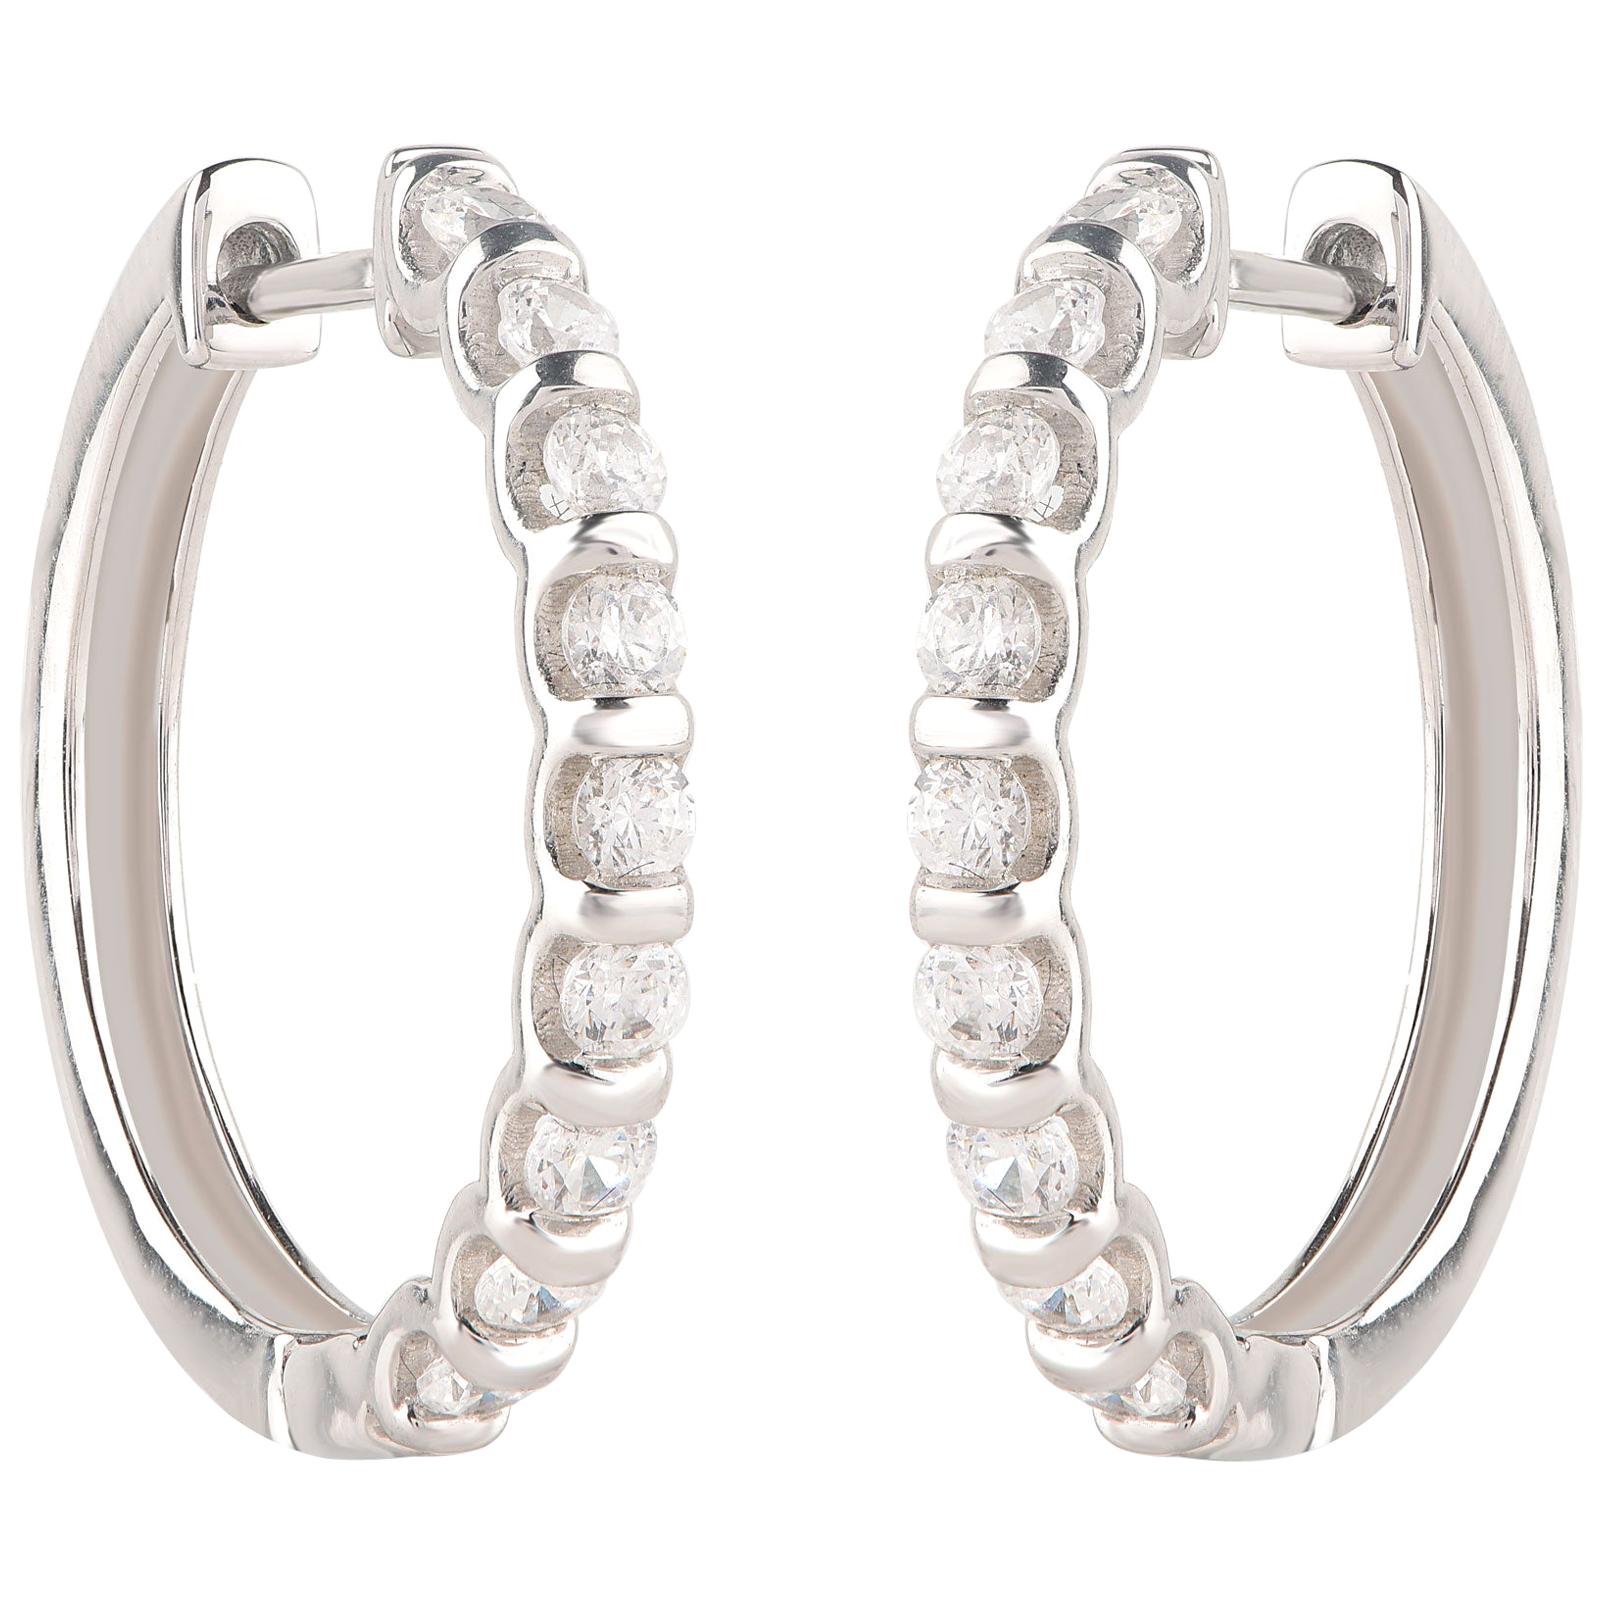 TJD 1.00 Carat Channel-Set Diamond 18 Karat White Gold Classic Hoop Earrings